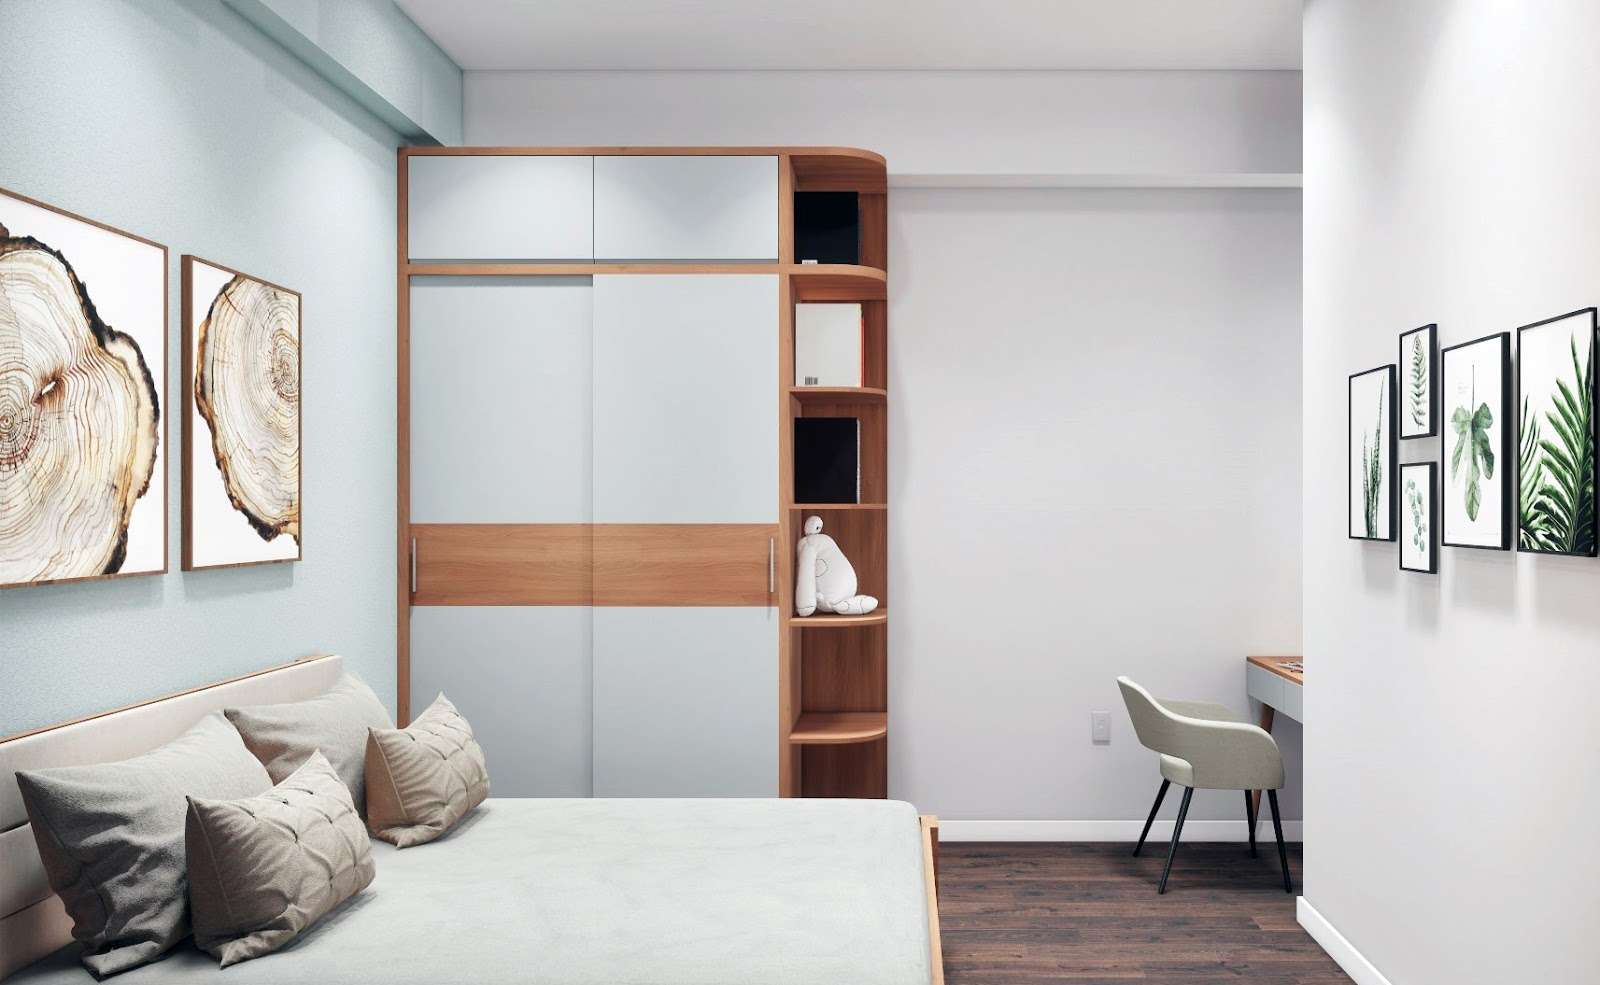 Giường ngủ bố trí sau góc khuất của căn phòng giúp tăng sự riêng tư mà vẫn đảm bảo công năng sử dụng của nó